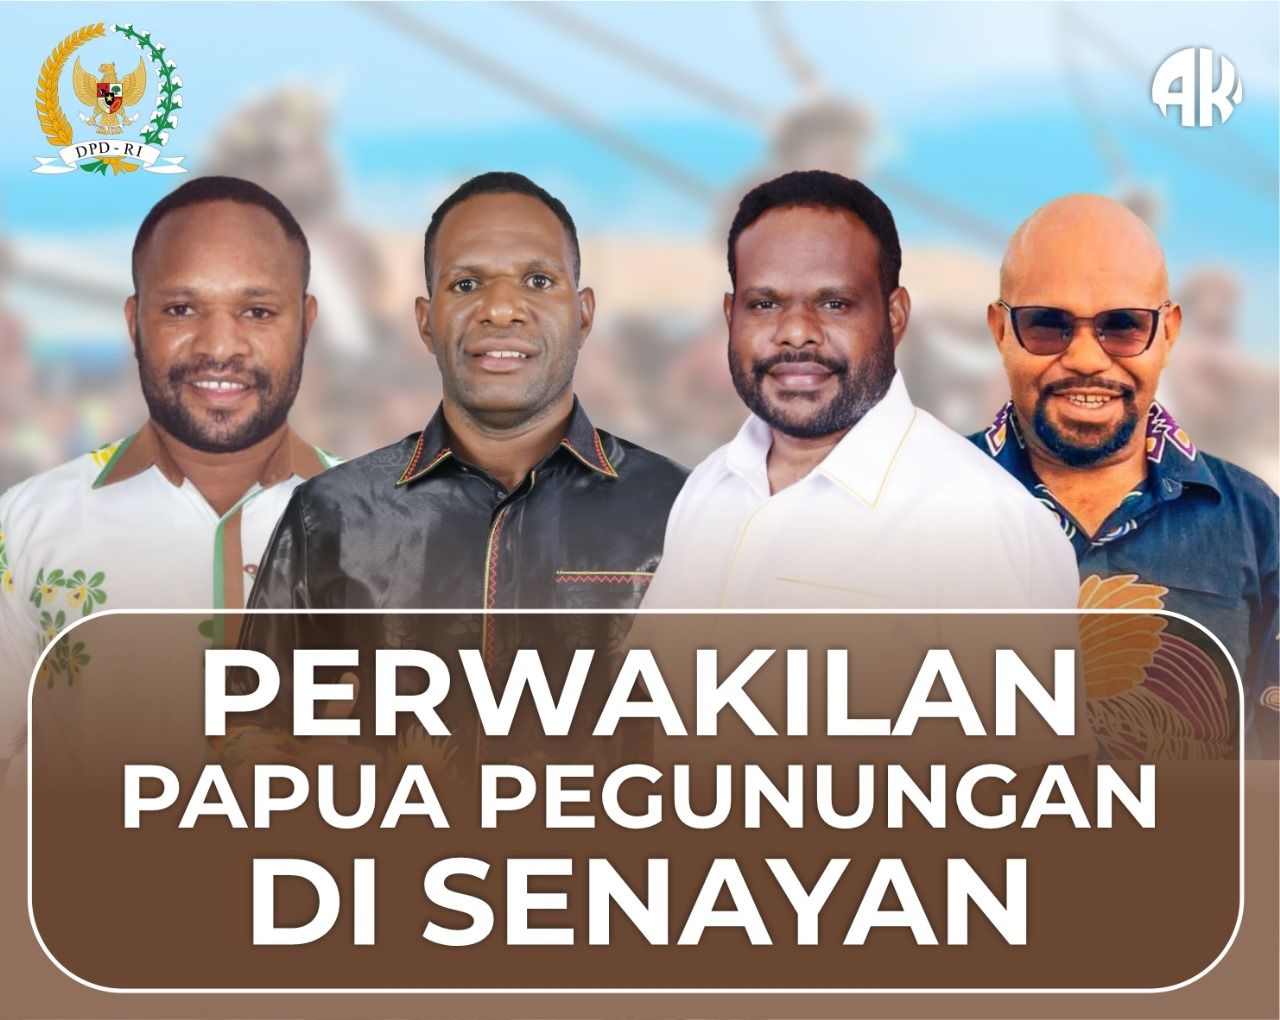 Empat orang tersebut mendapat suara besar berdasarkan hasil rekapitulasi suara yang dilakukan oleh KPU Provinsi Papua Pegunungan.